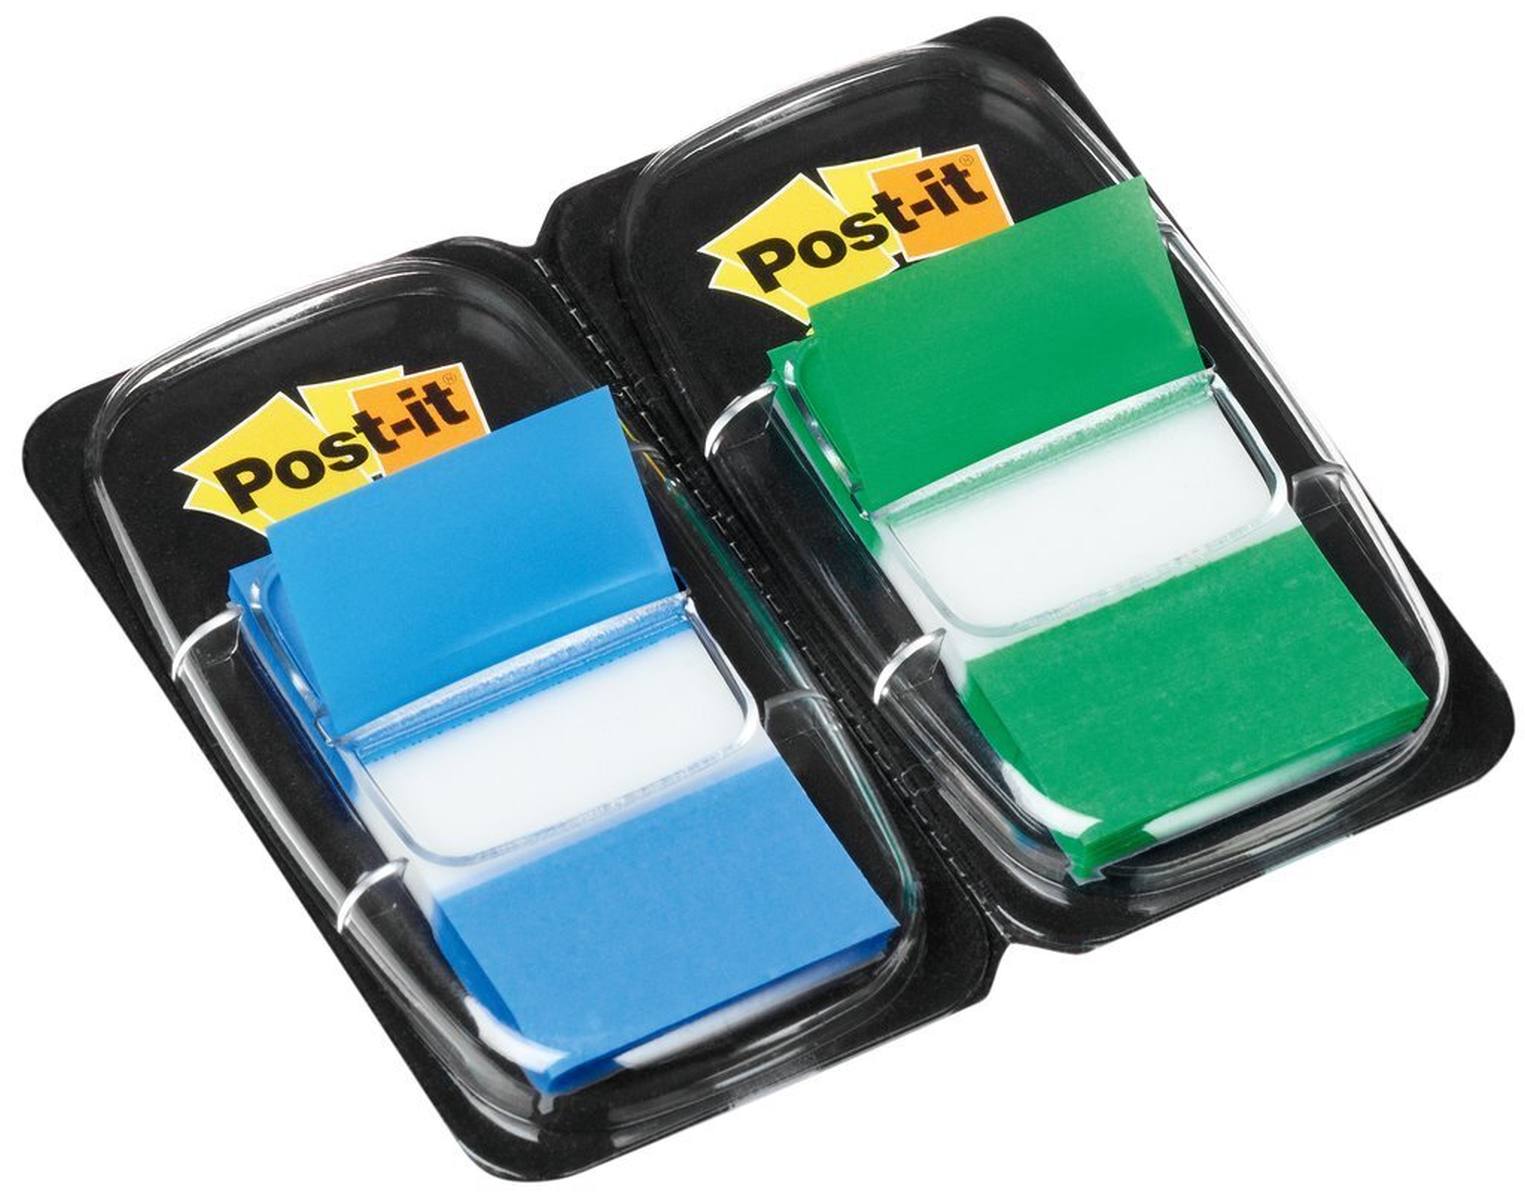 3M Post-it Index  I680-GB2, 25,4 mm x 43,2 mm, blau, grün, 2 x 50 Haftstreifen im Spender